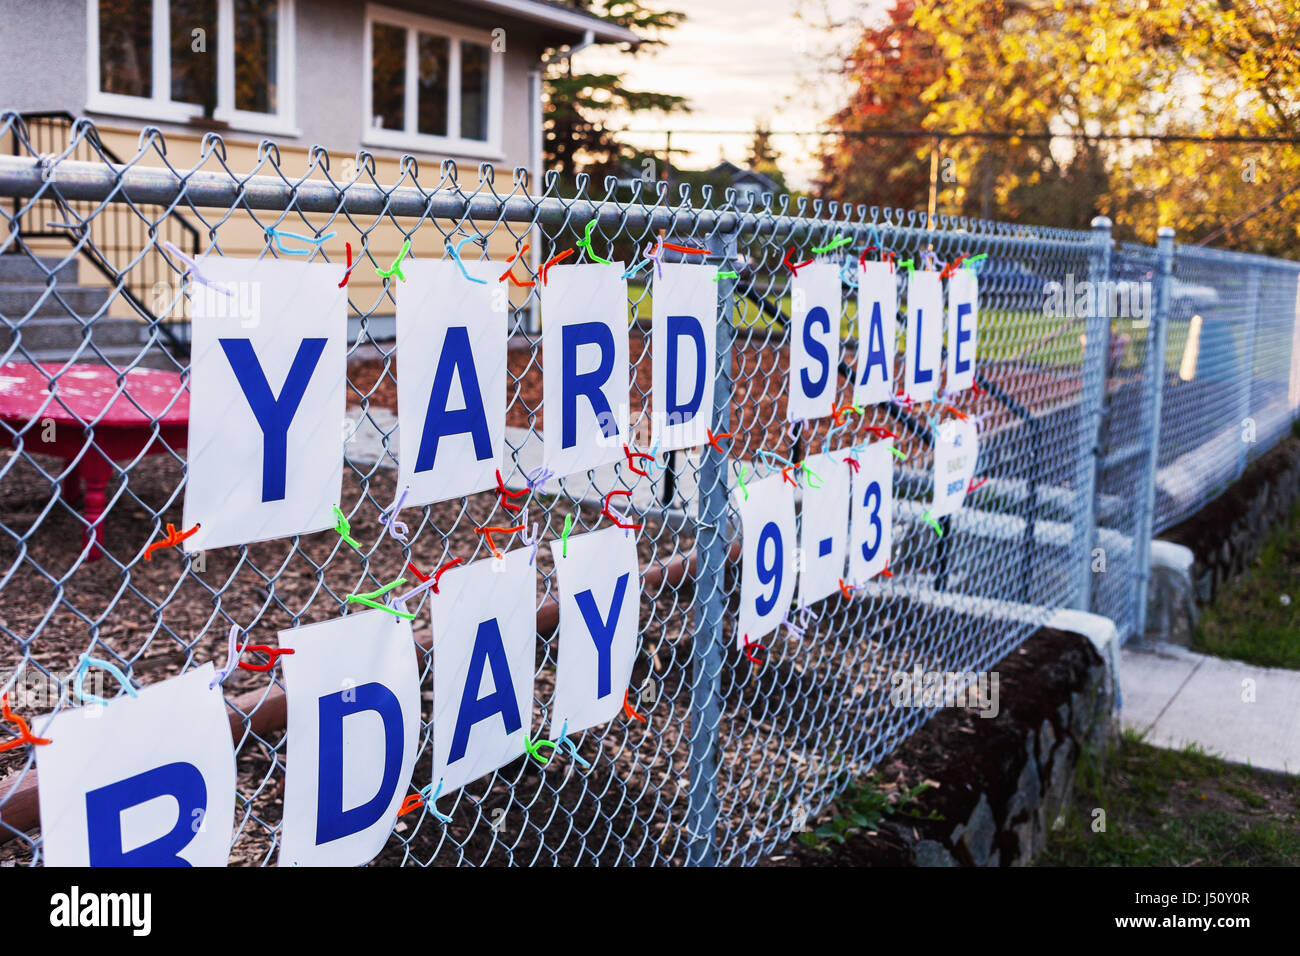 Yard Sale Zeichen, Victoria BC Kanada Stockfoto